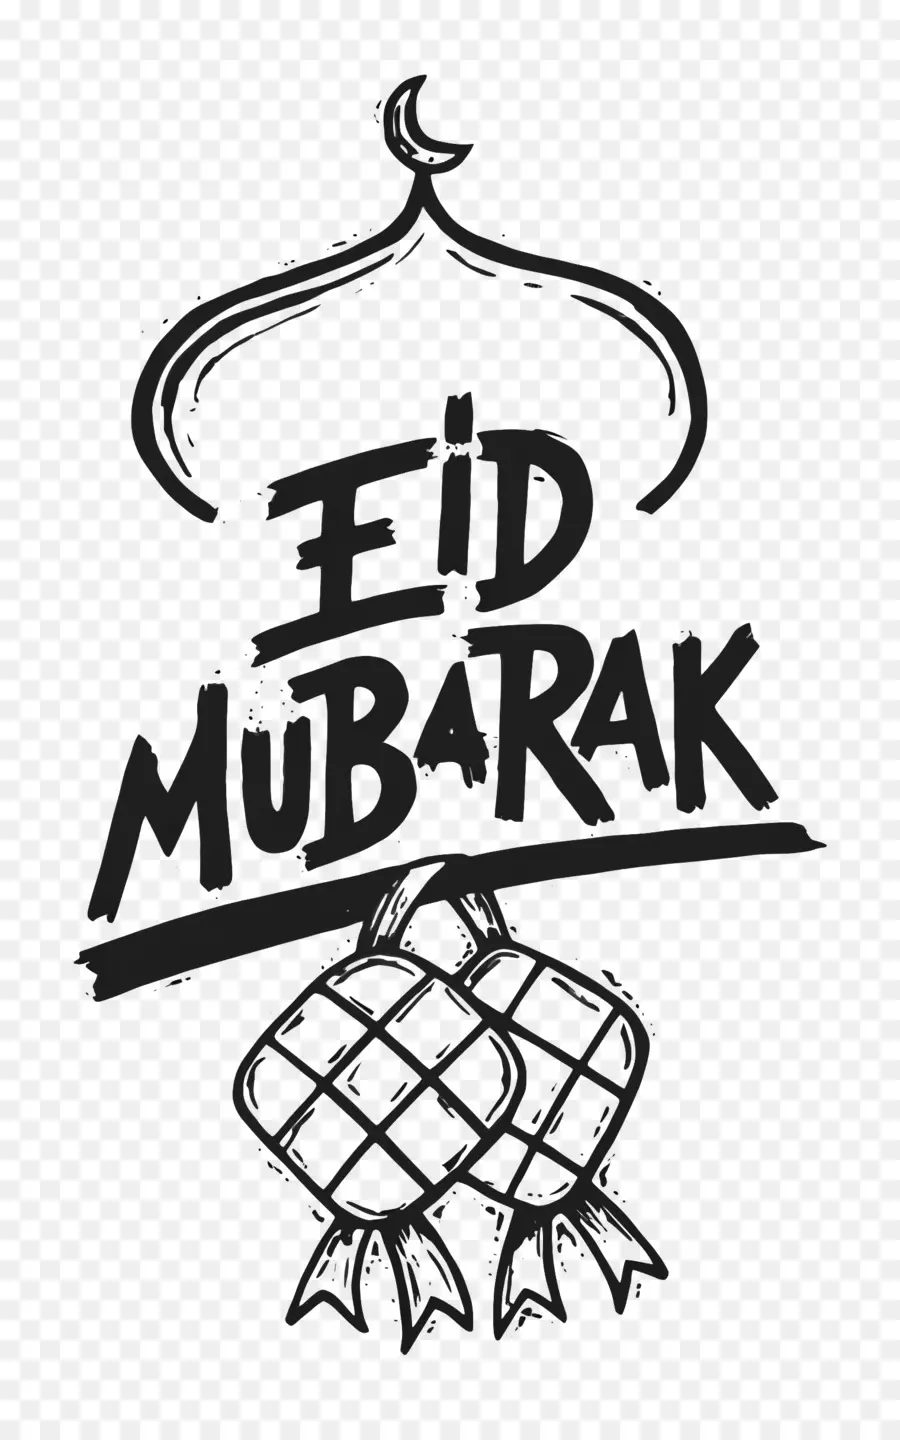 Eid Al Adha，Eid Mubarak PNG